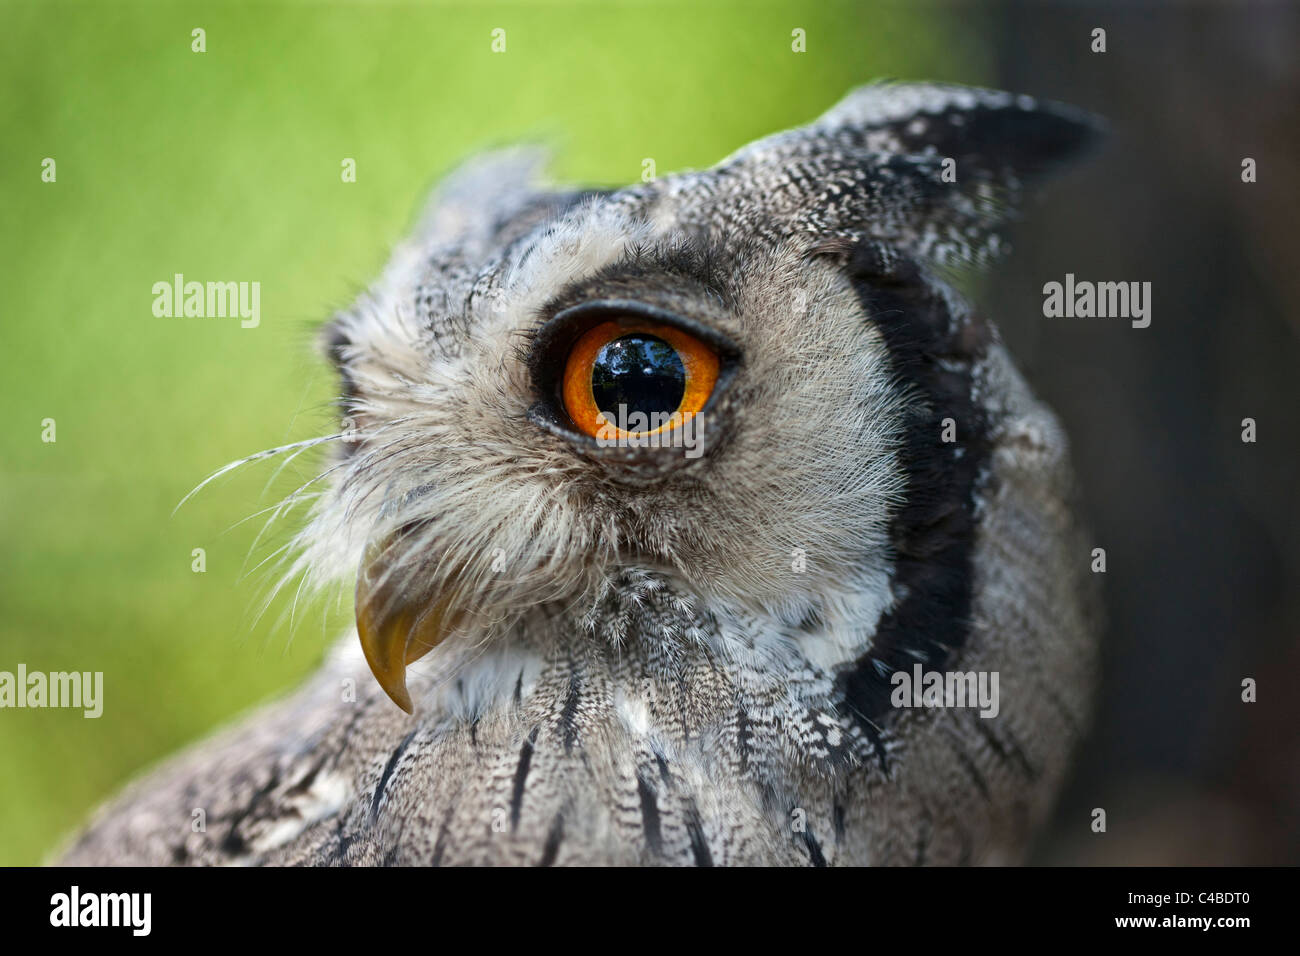 Un retrato de un Scops-Owl cara blanca, una especie de búho pequeño con sus penachos auriculares que se planteó cuando el pájaro está perturbado. Nairobi, Kenya Foto de stock